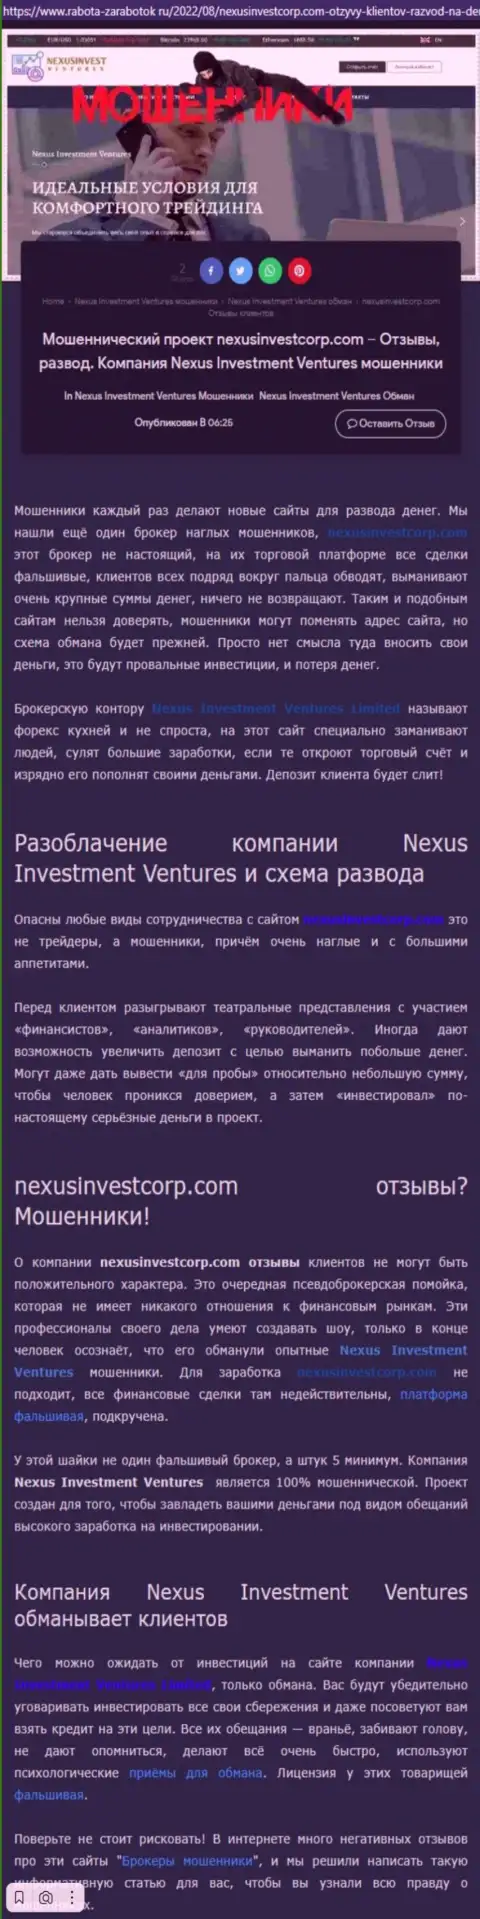 Если же не намерены быть еще одной жертвой Nexus Invest, бегите от них как можно дальше (обзор)